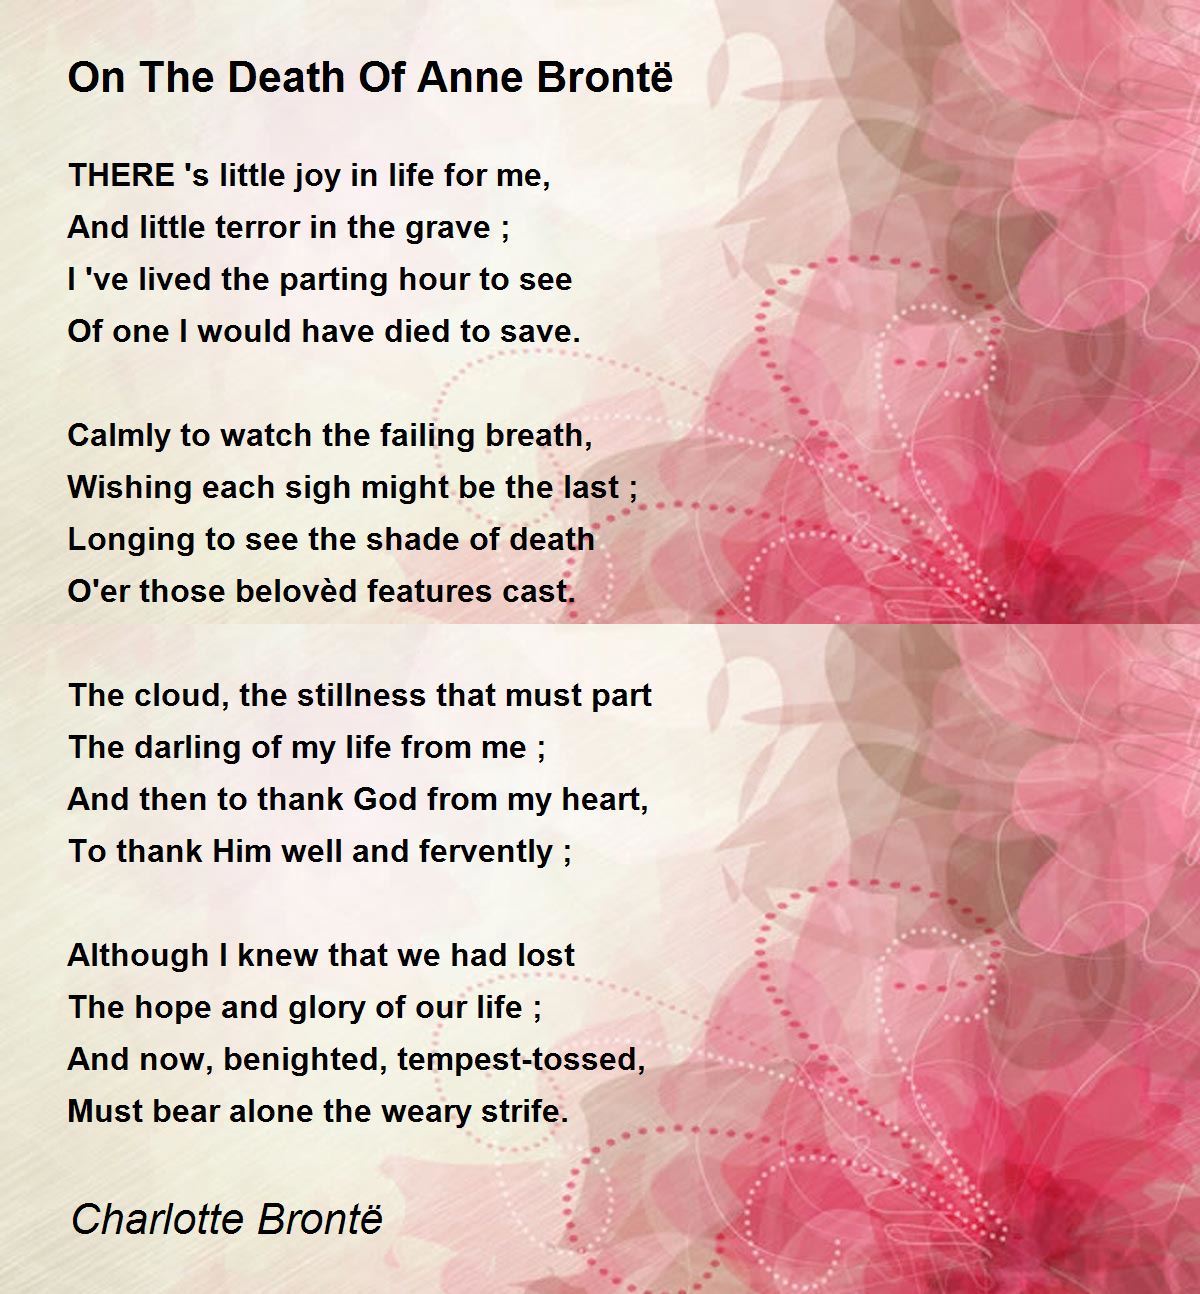 On The Death Of Anne Brontë Poem by Charlotte Brontë - Poem Hunter